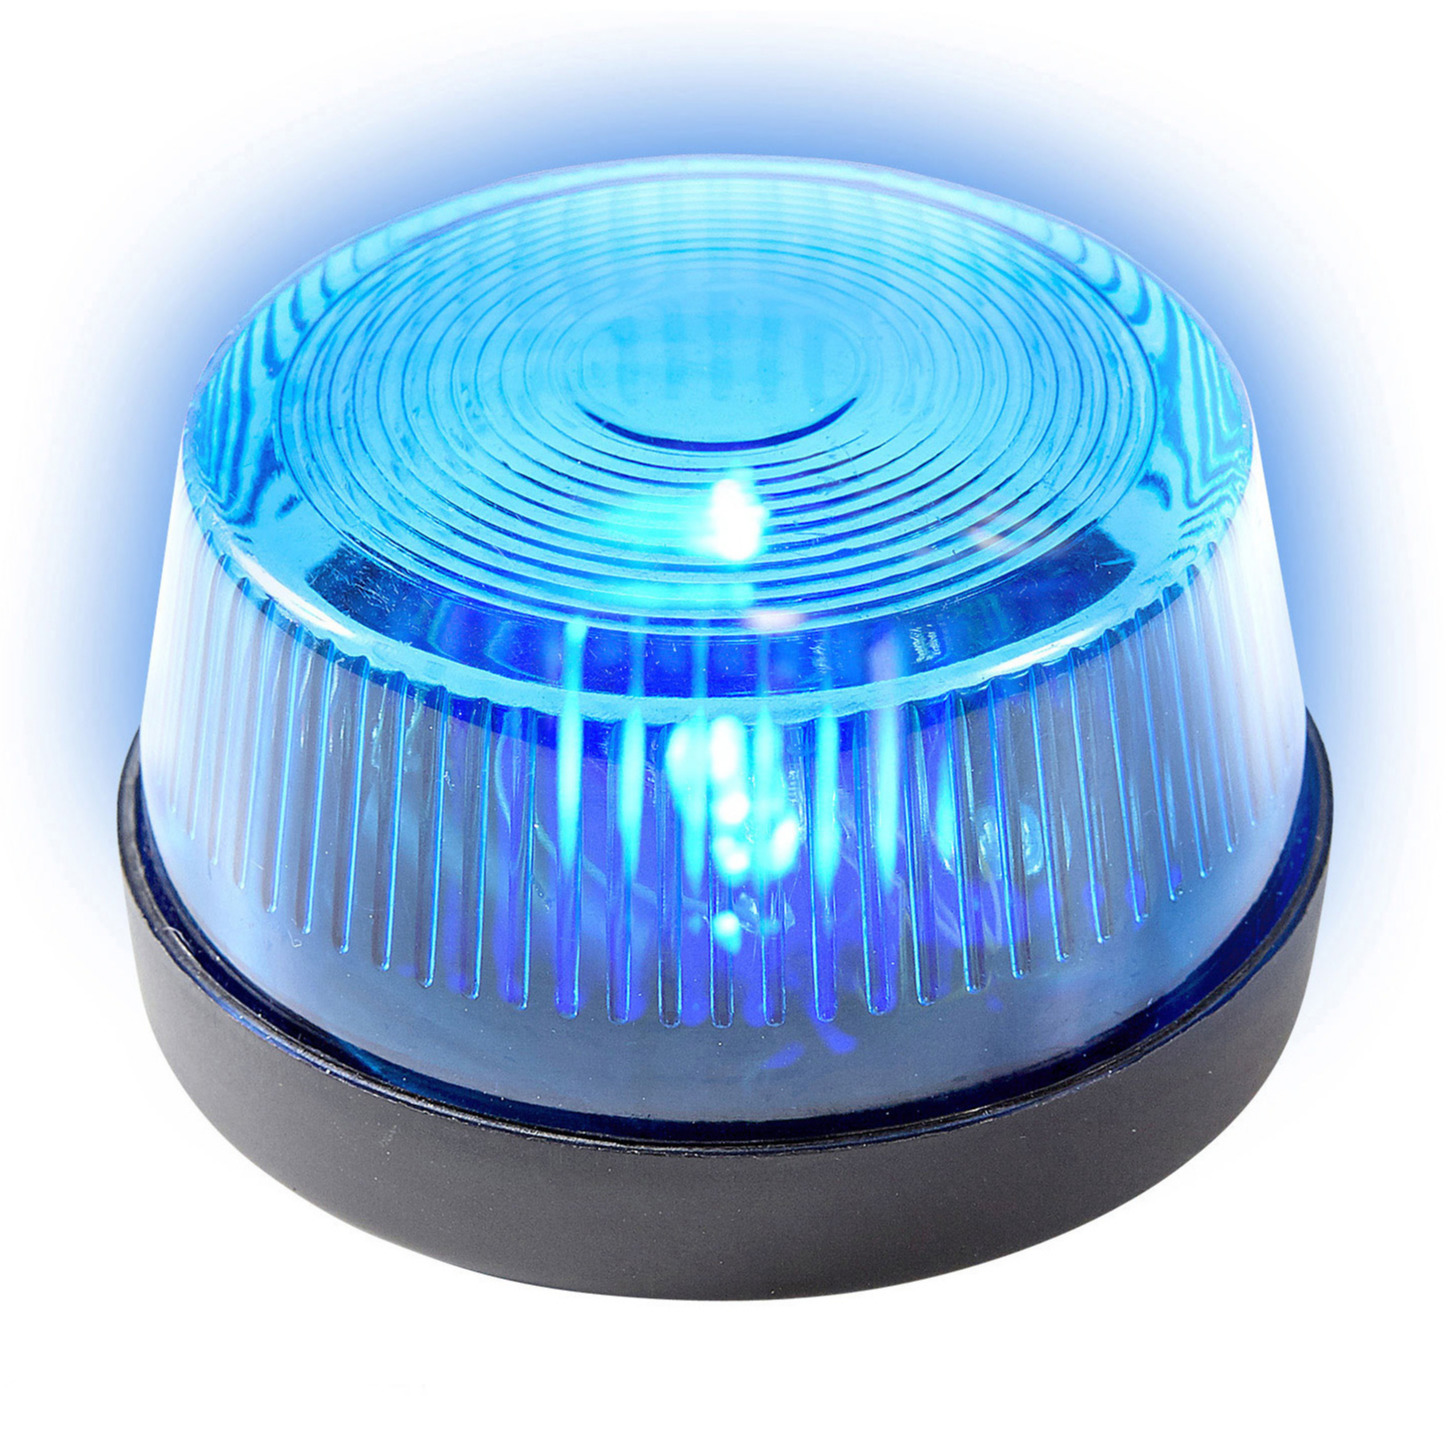 Blauwe politie LED zwaailamp/zwaailicht met sirene 7 cm